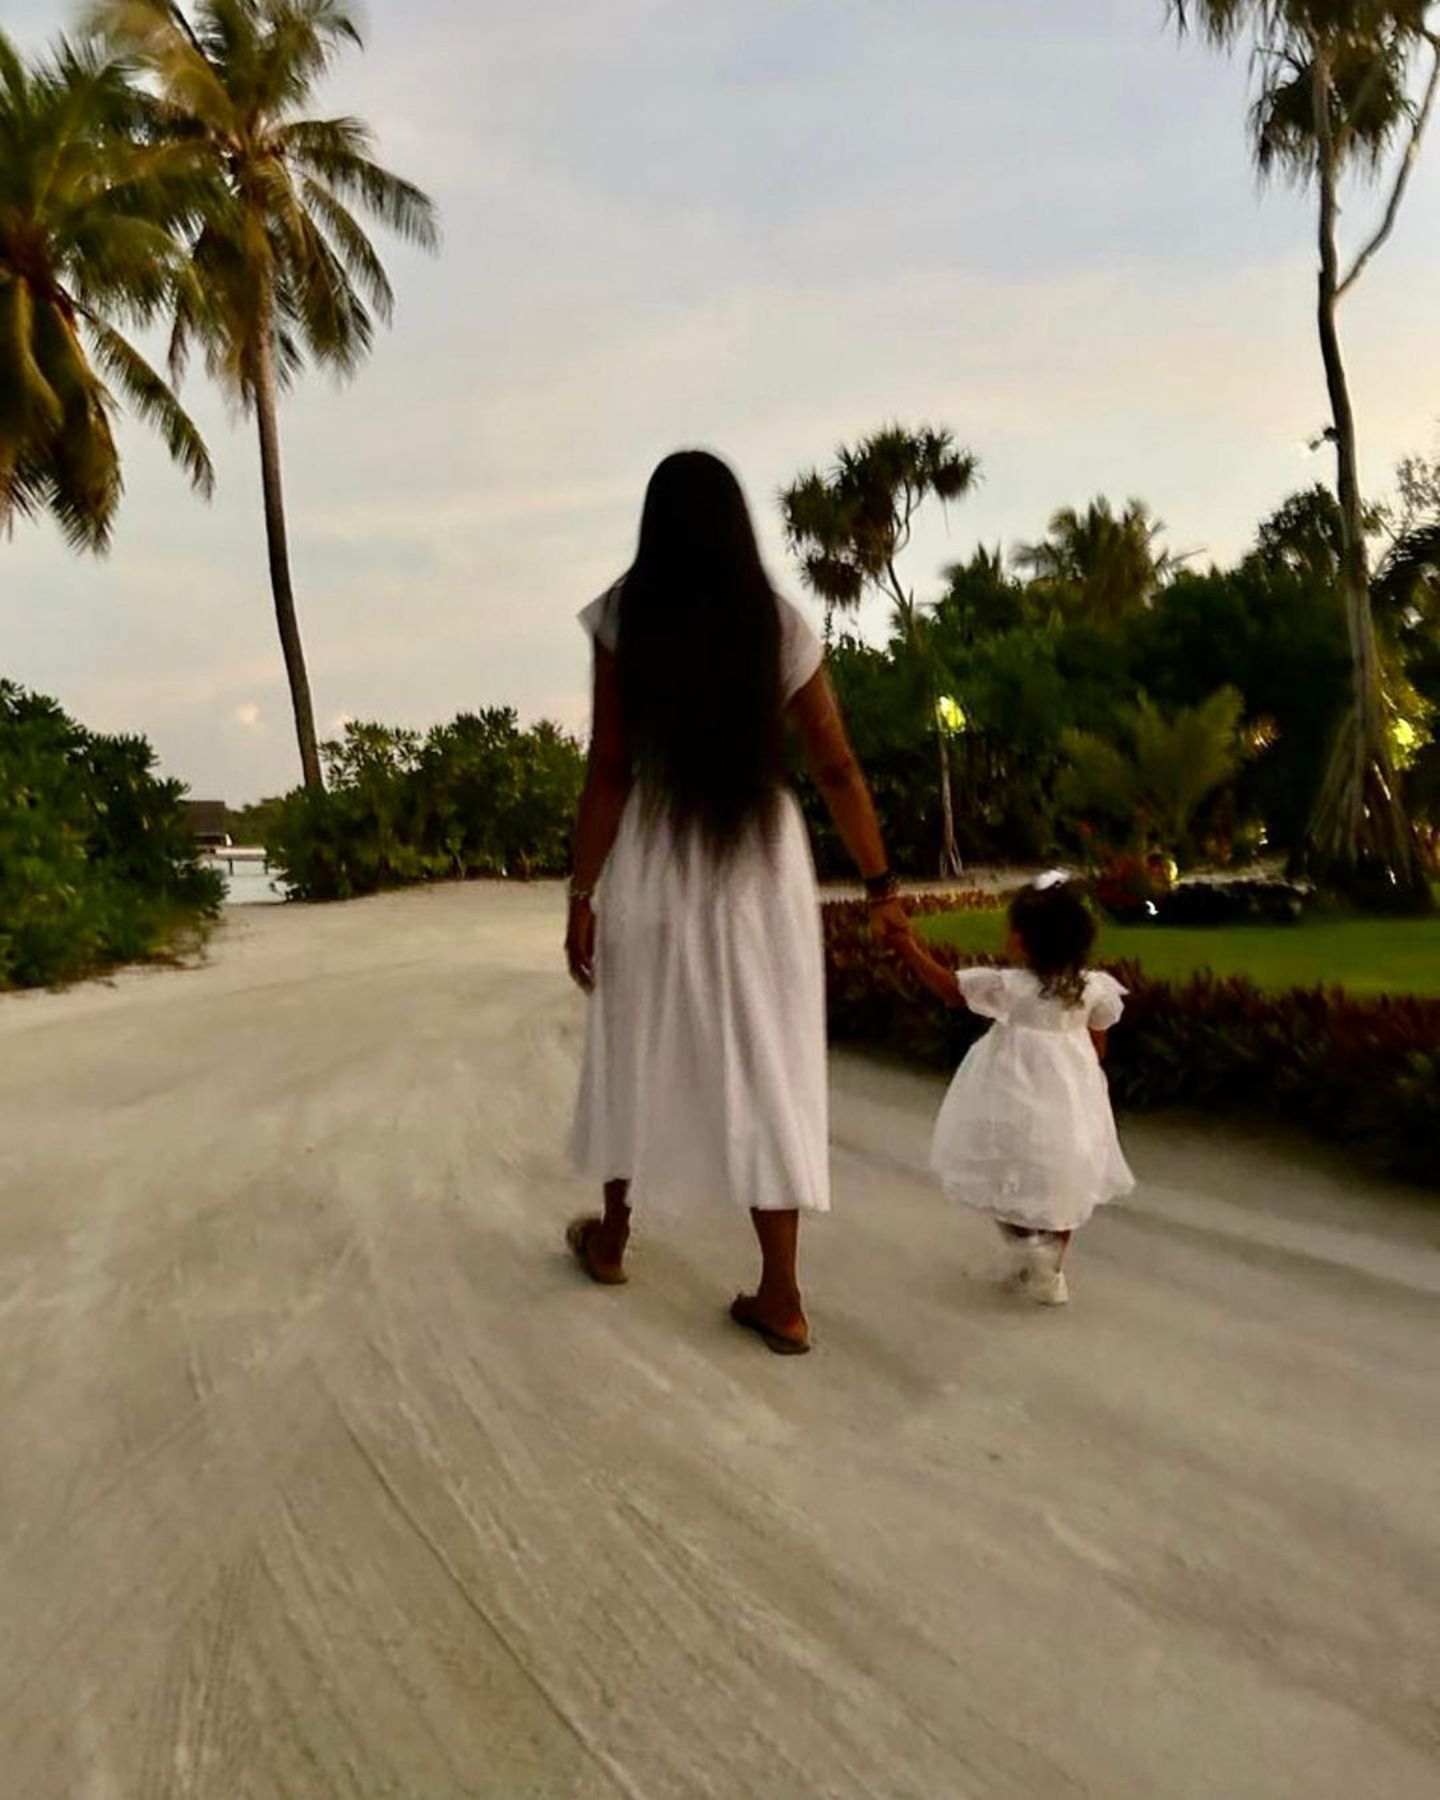 Traumstrände, die liebsten Menschen um sich herum – Naomi Campbell könnte in ihrem Malediven-Urlaub nicht glücklicher sein. In einem Karussell-Post auf Instagram teilt sie ihre schönen Erlebnisse und zeigt dabei auch vier Bilder ihrer Tochter. Im süßen weißen Partnerlook lässt sich nur erahnen, dass die kleine Tochter von Naomi ihre Liebe zur Mode geerbt hat. 